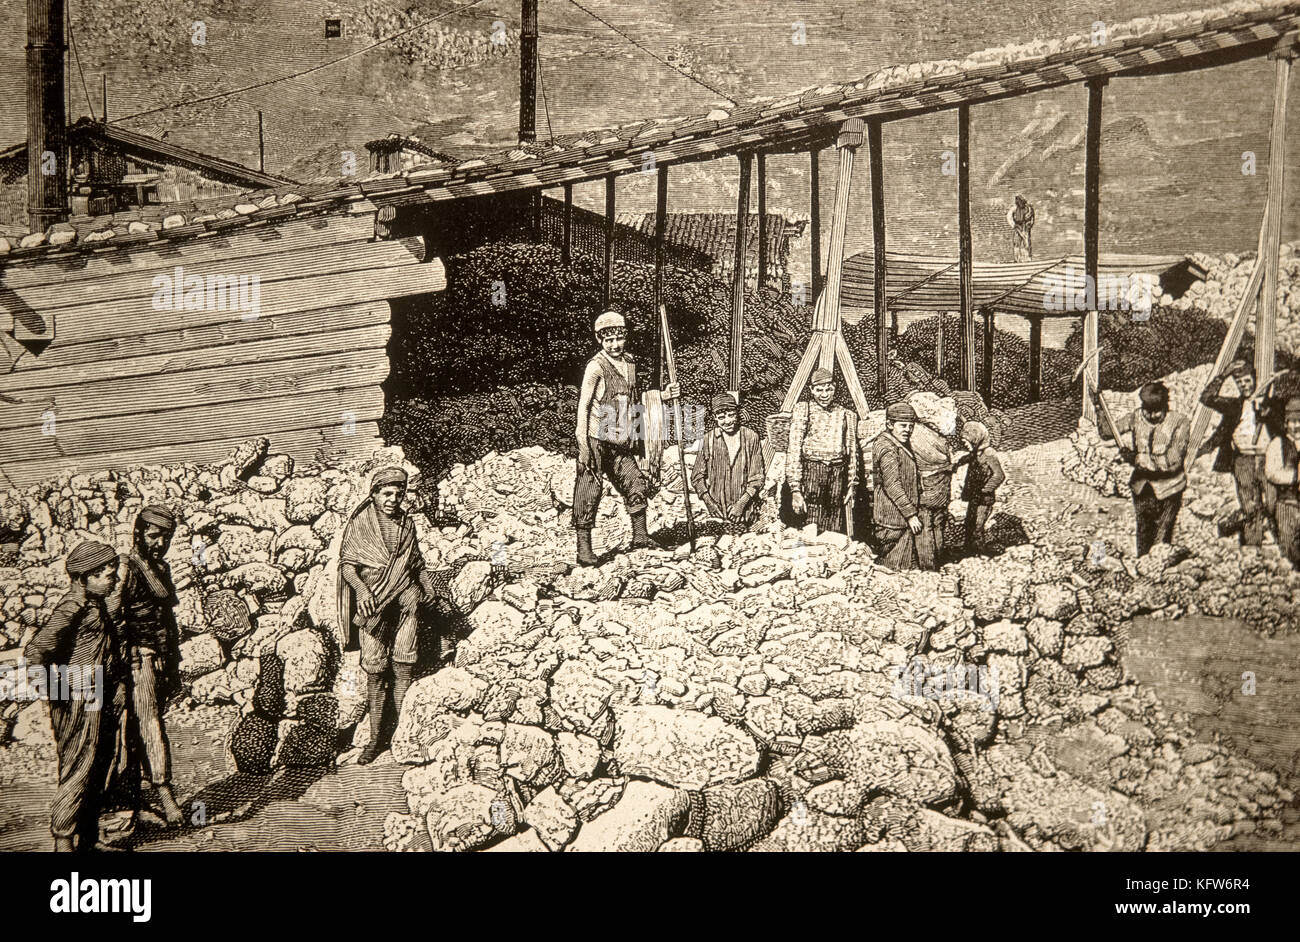 Italy Sicily - Lercarafriddi - sulfur mine 1894 - E. Ximenes Stock Photo